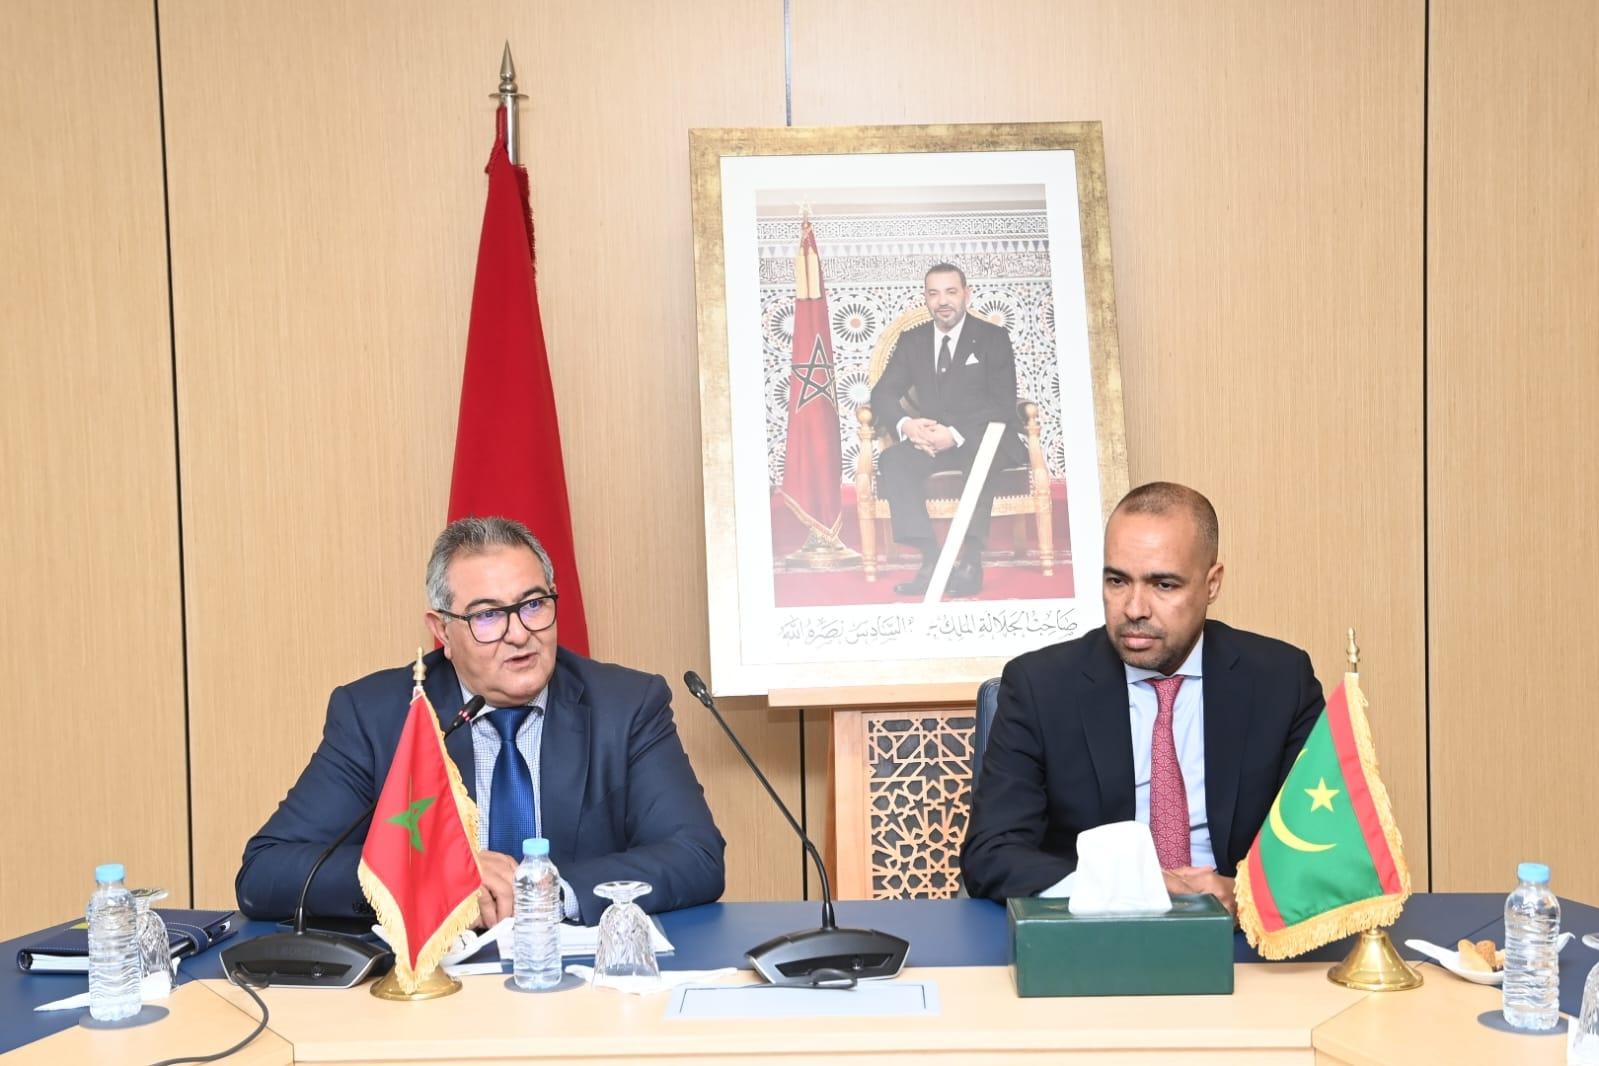 Le Secrétaire Général reçoit une délégation mauritanienne